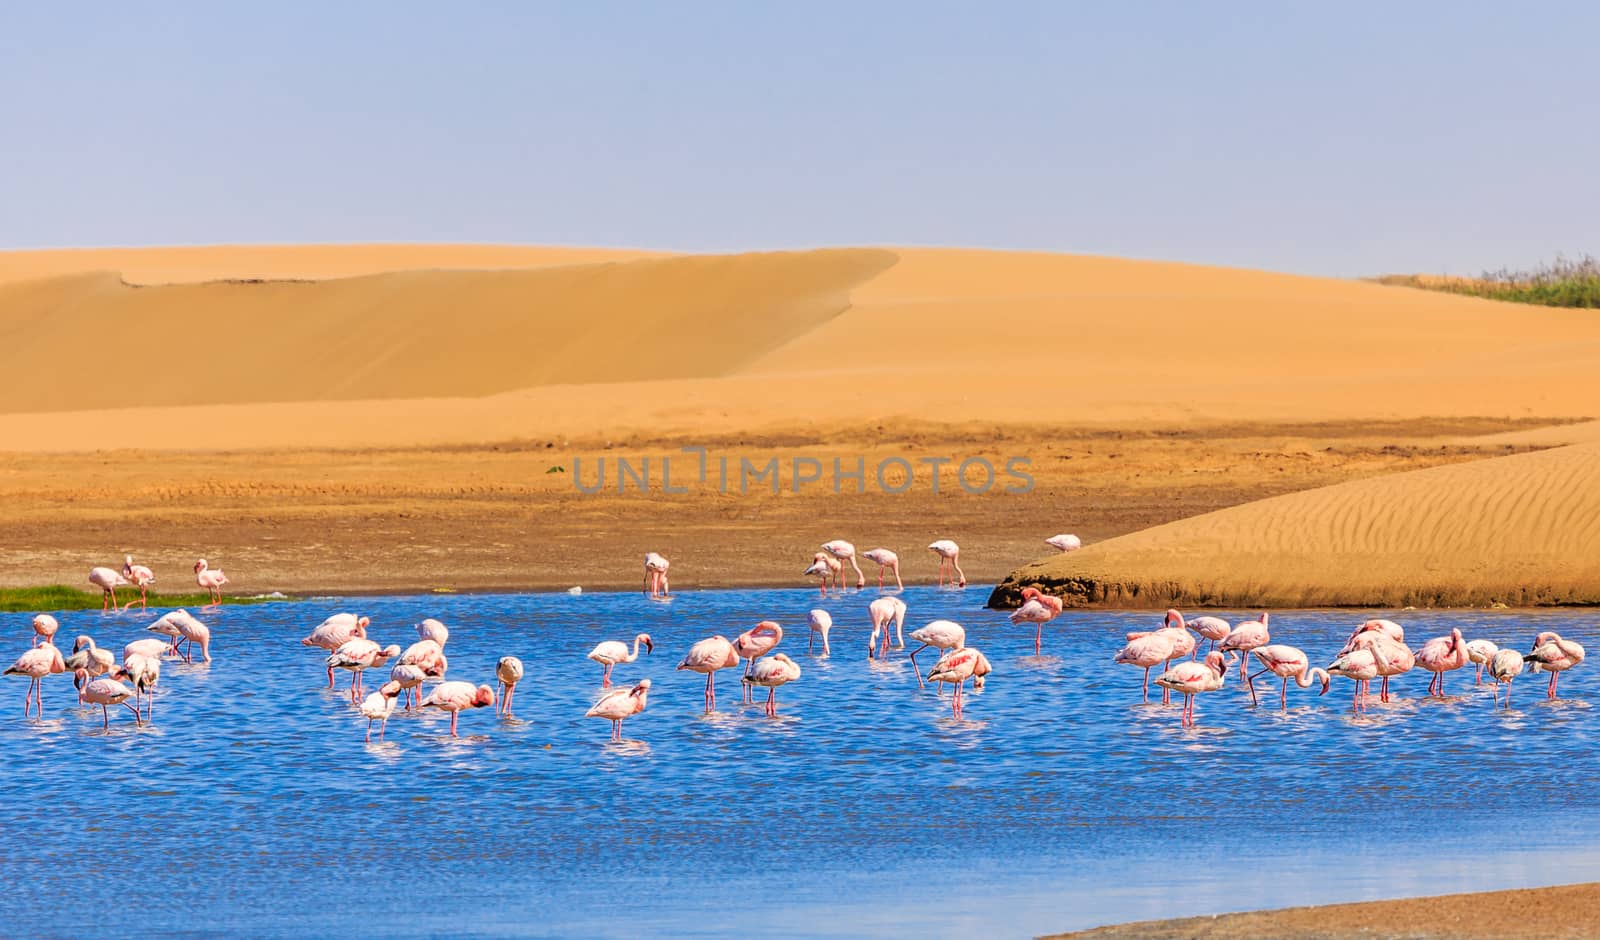 Flock of pink flamingo marching along the dune in Kalahari Desert, Namibia